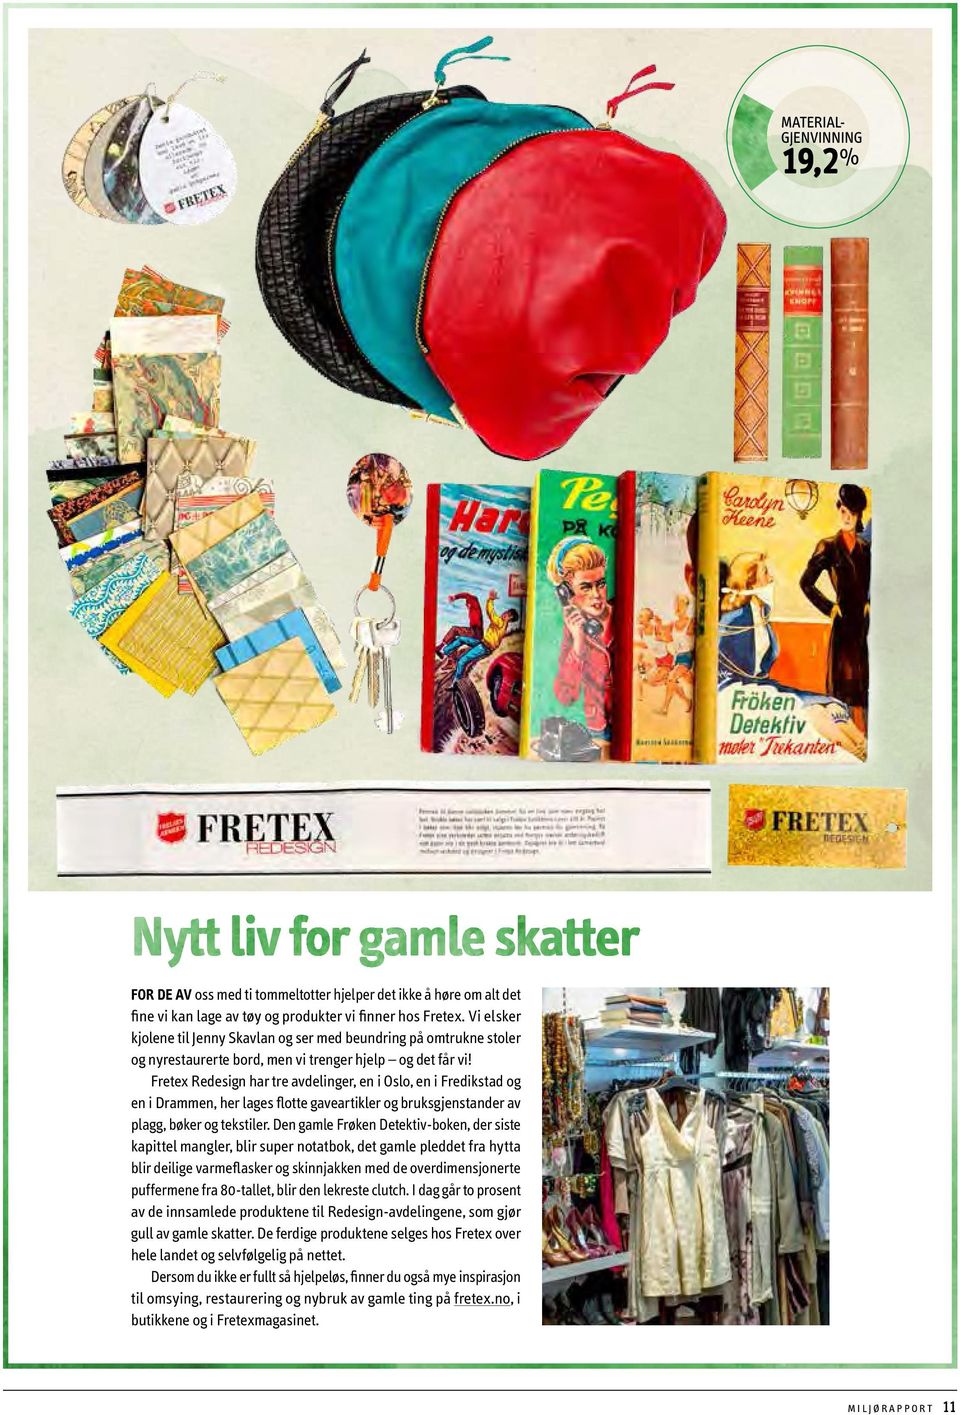 Fretex Redesign har tre avdelinger, en i Oslo, en i Fredikstad og en i Drammen, her lages flotte gaveartikler og bruksgjenstander av plagg, bøker og tekstiler.